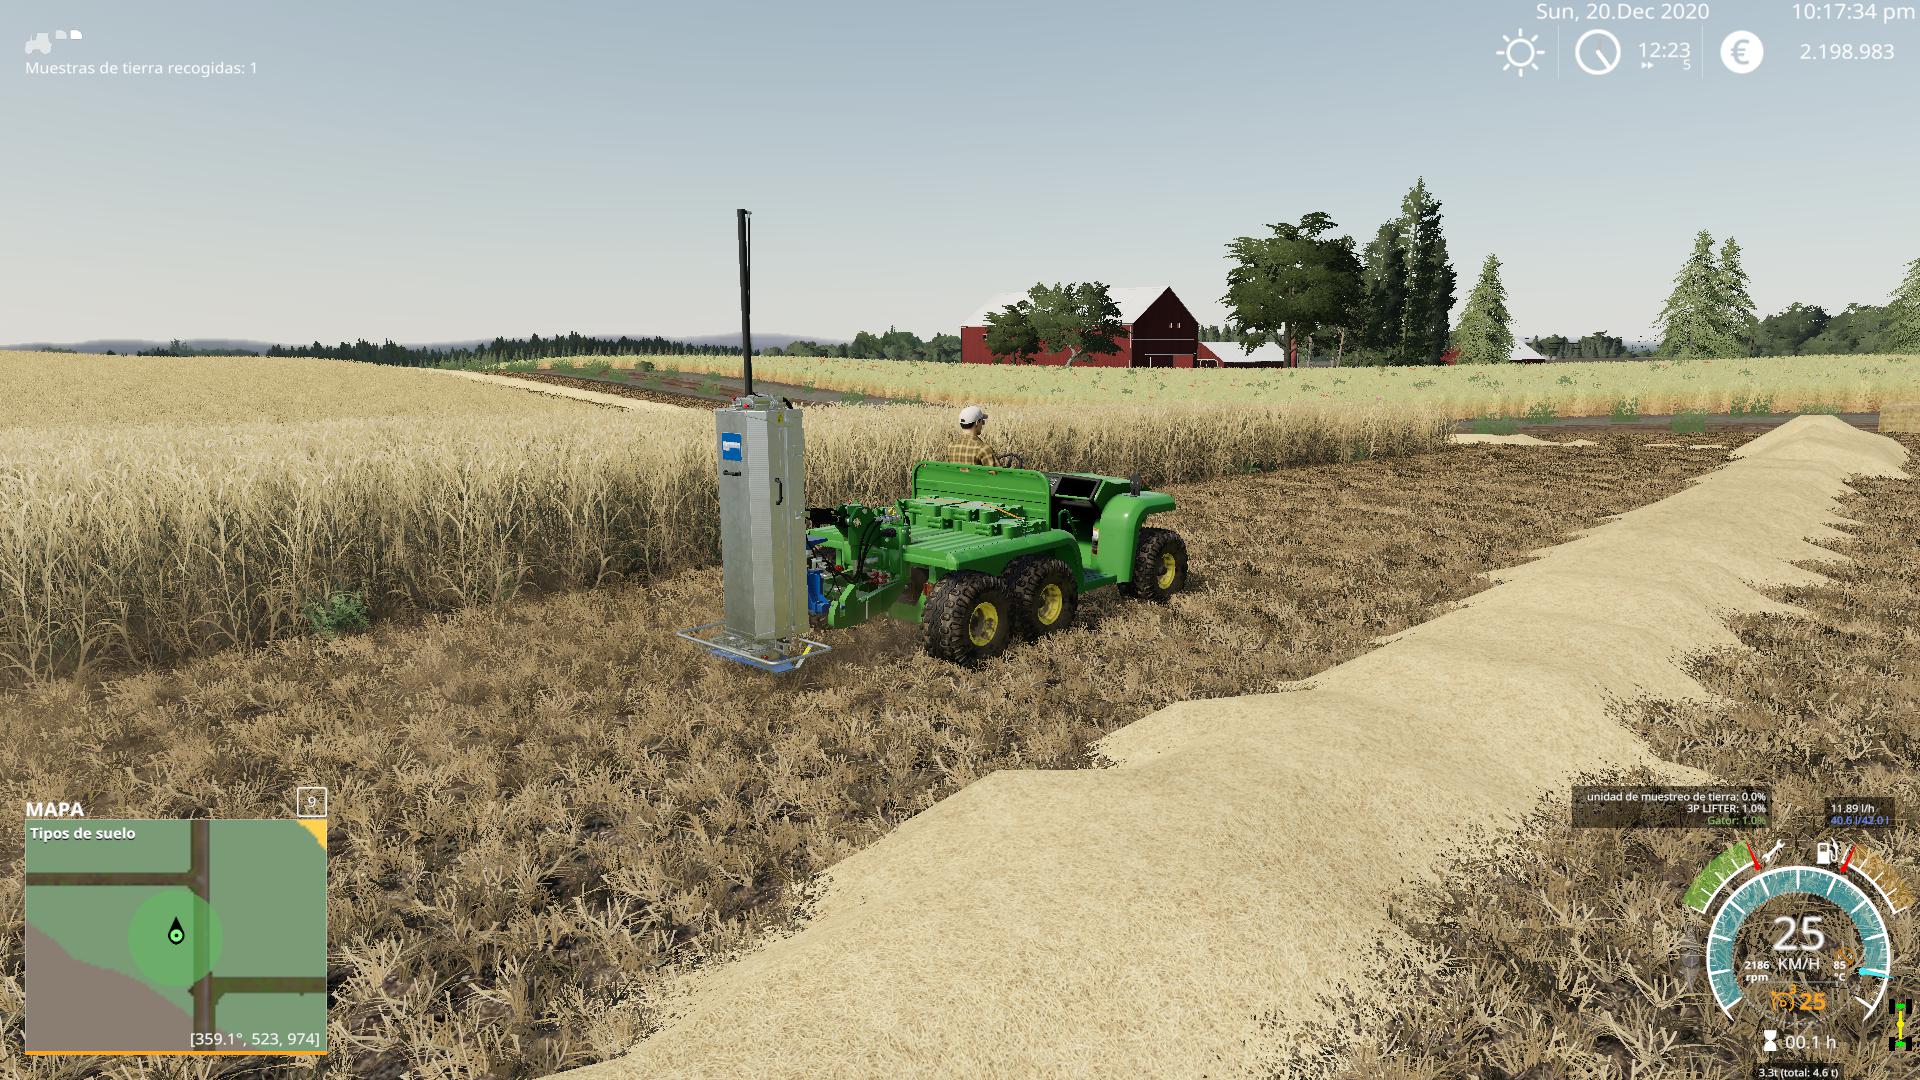 free download precision farming fs22